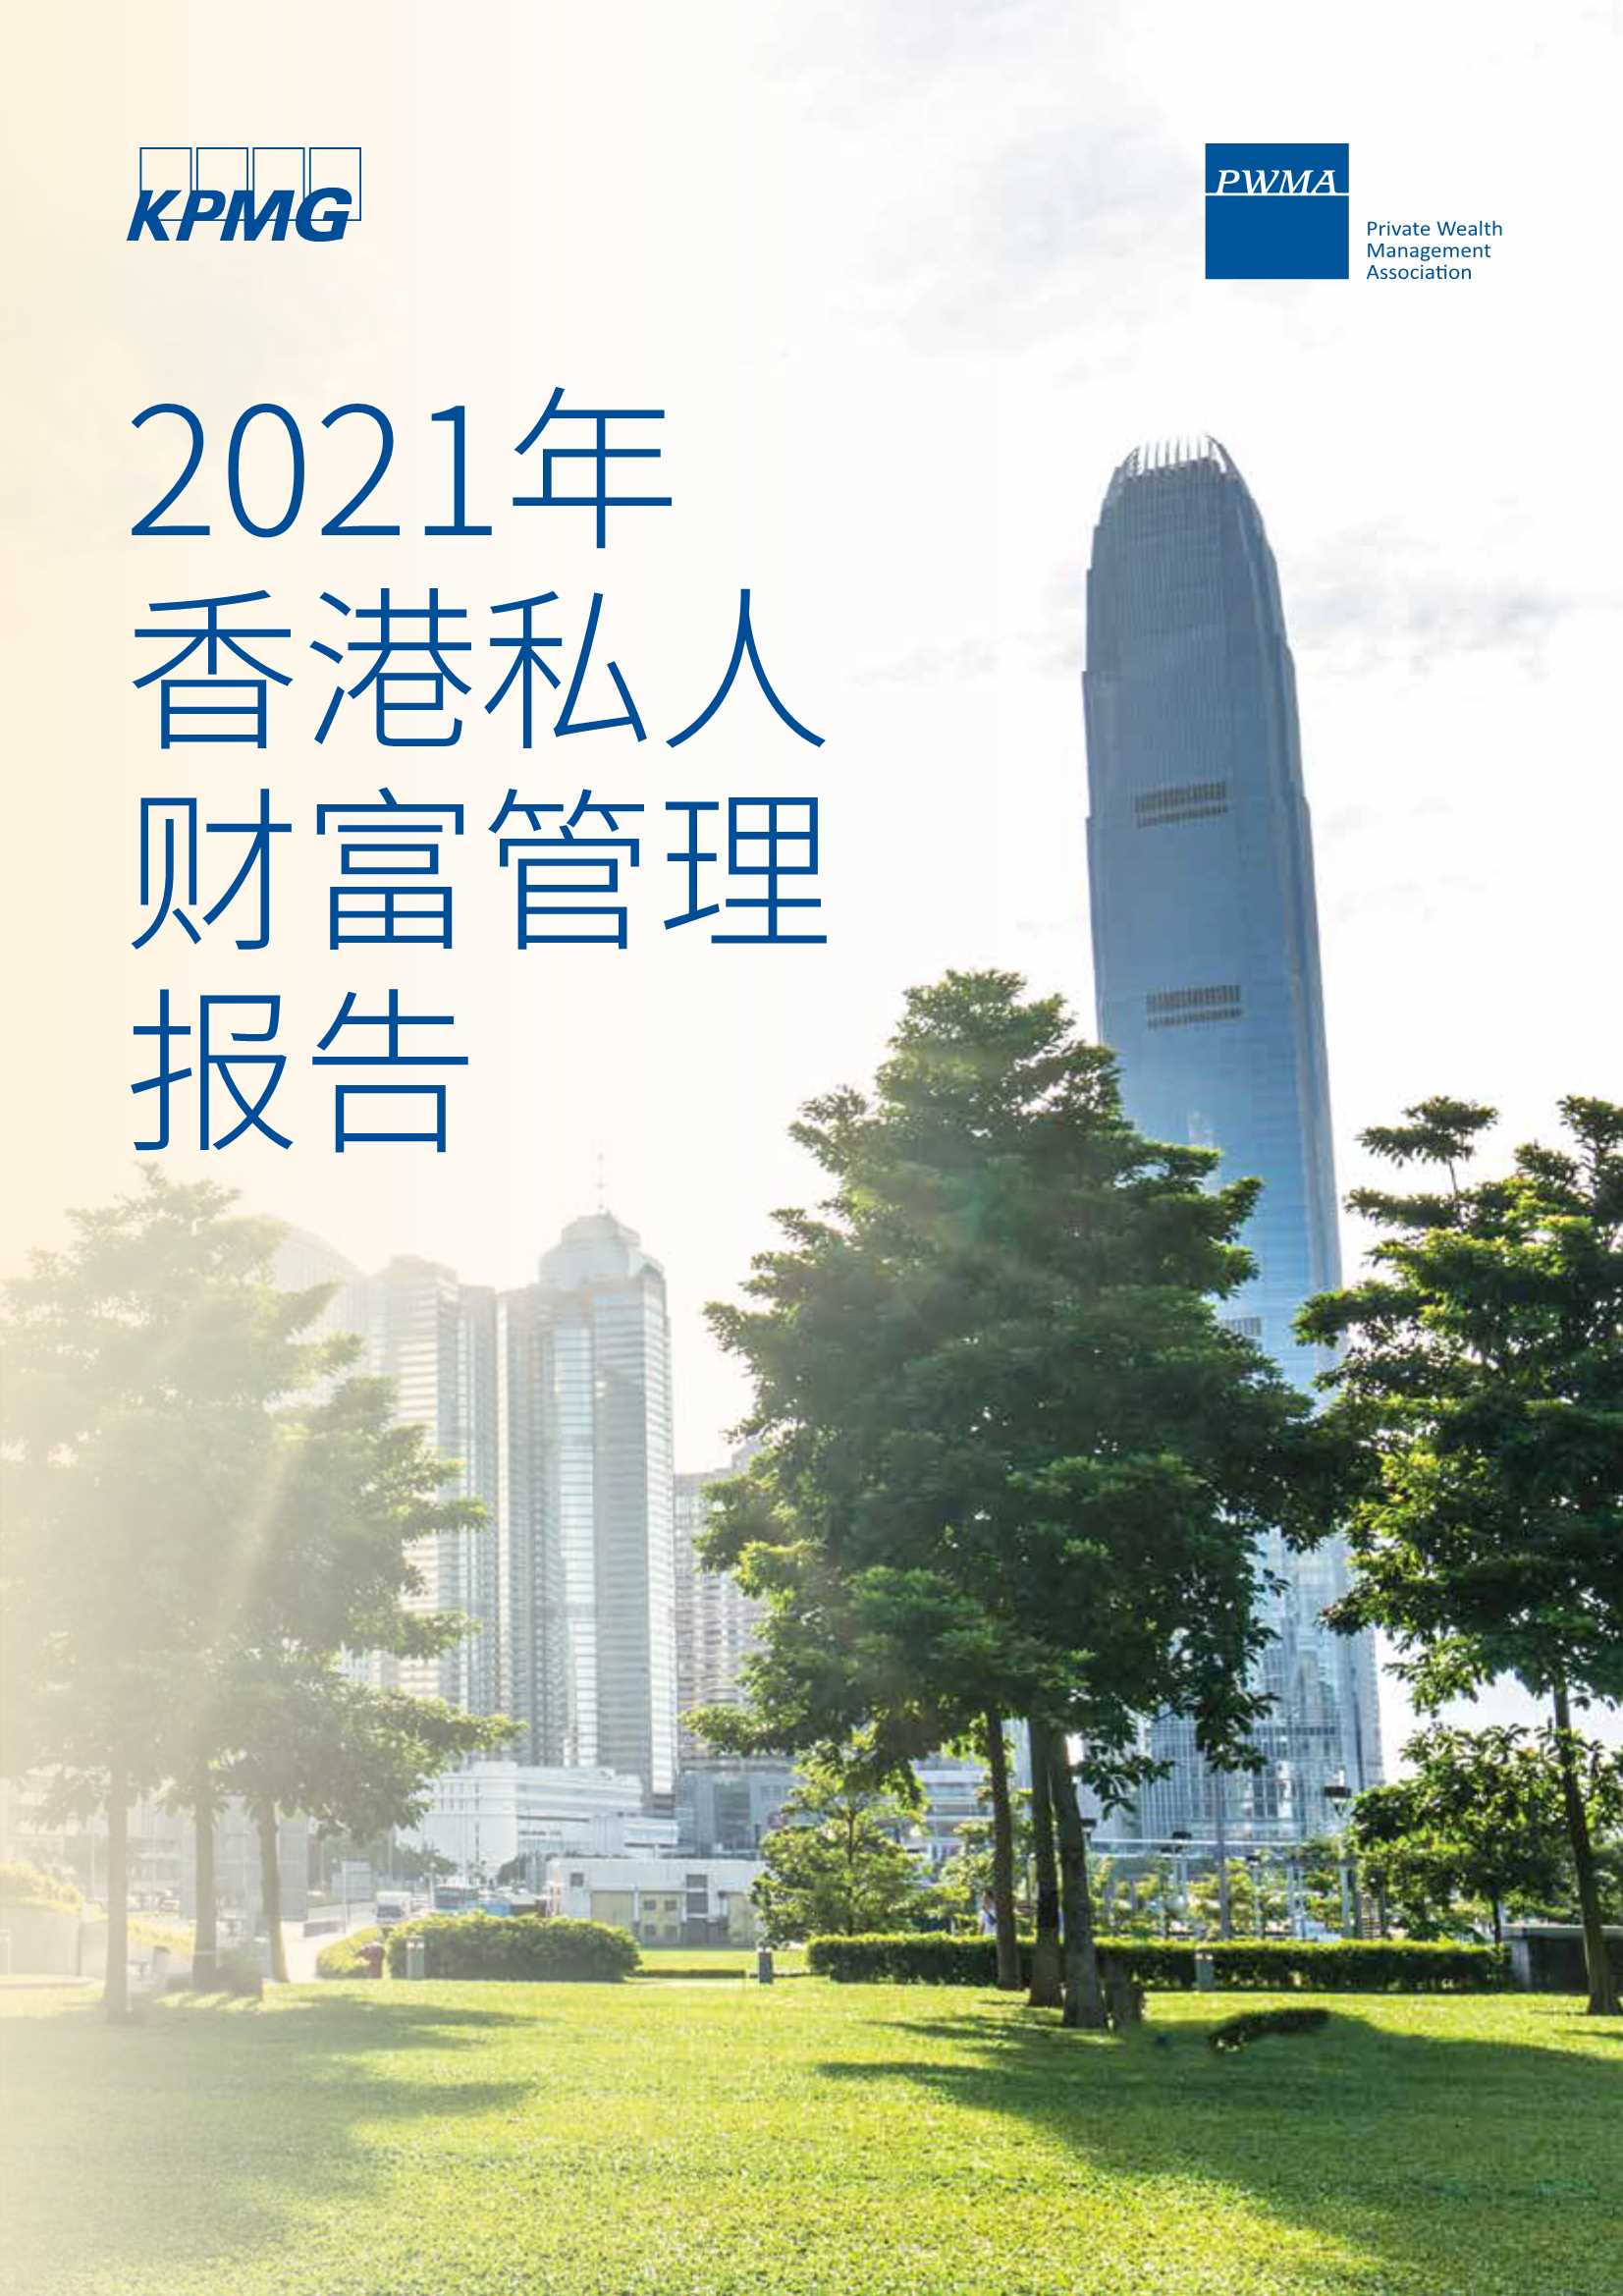 毕马威&私人财富管理公会-2021年香港私人财富管理报告-2021.12-36页